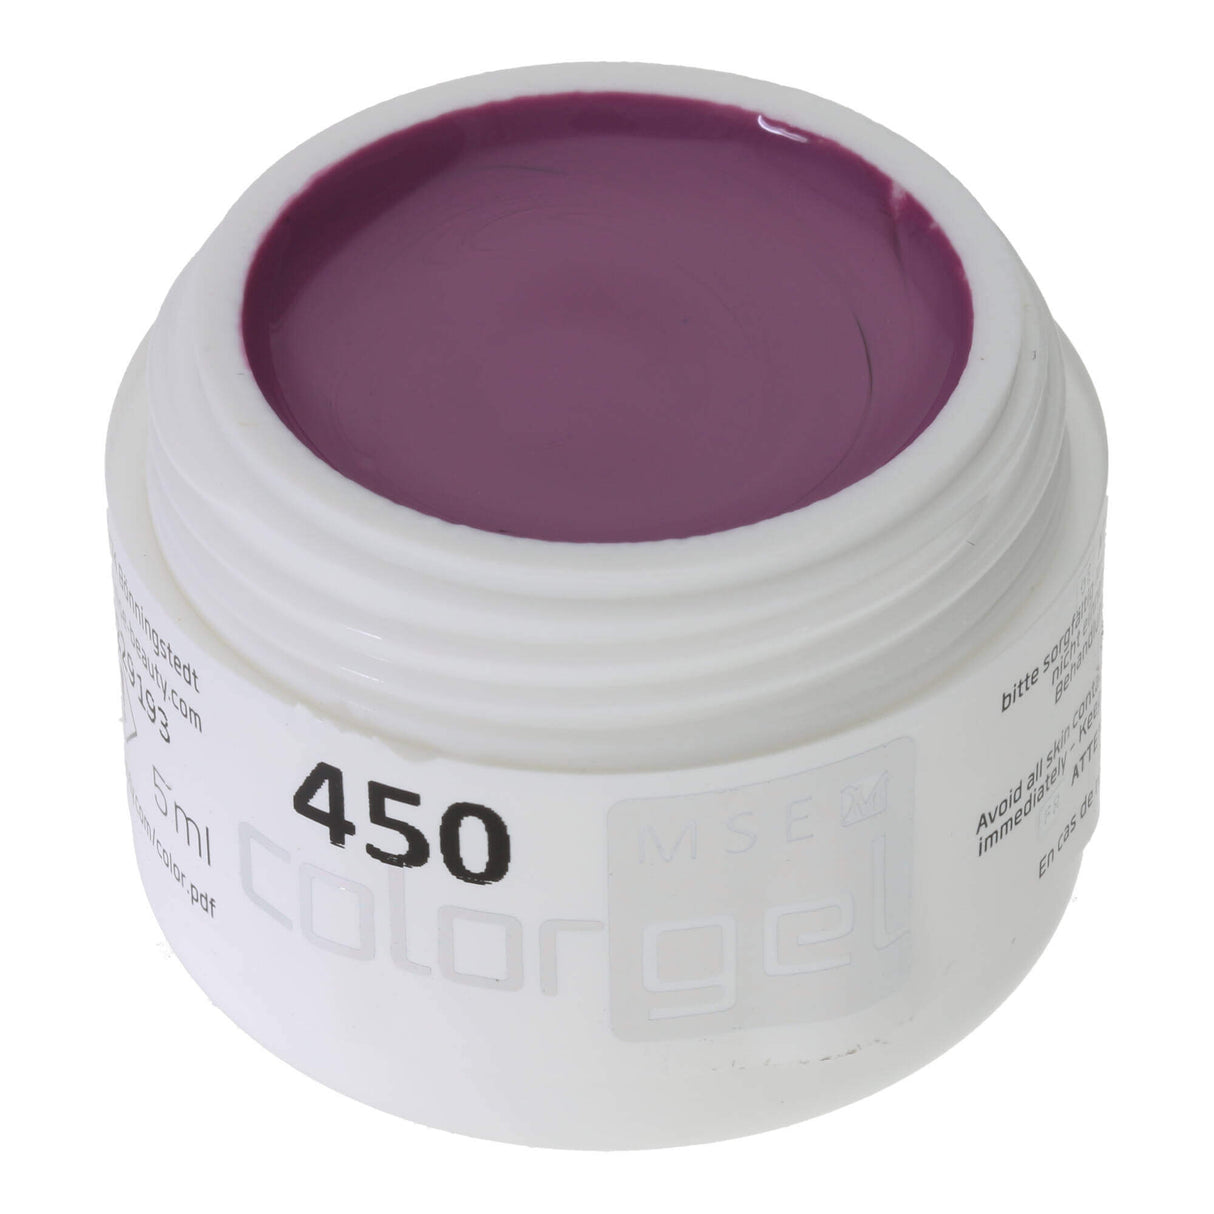 # 450 Premium-PURE Color Gel 5ml reddish purple